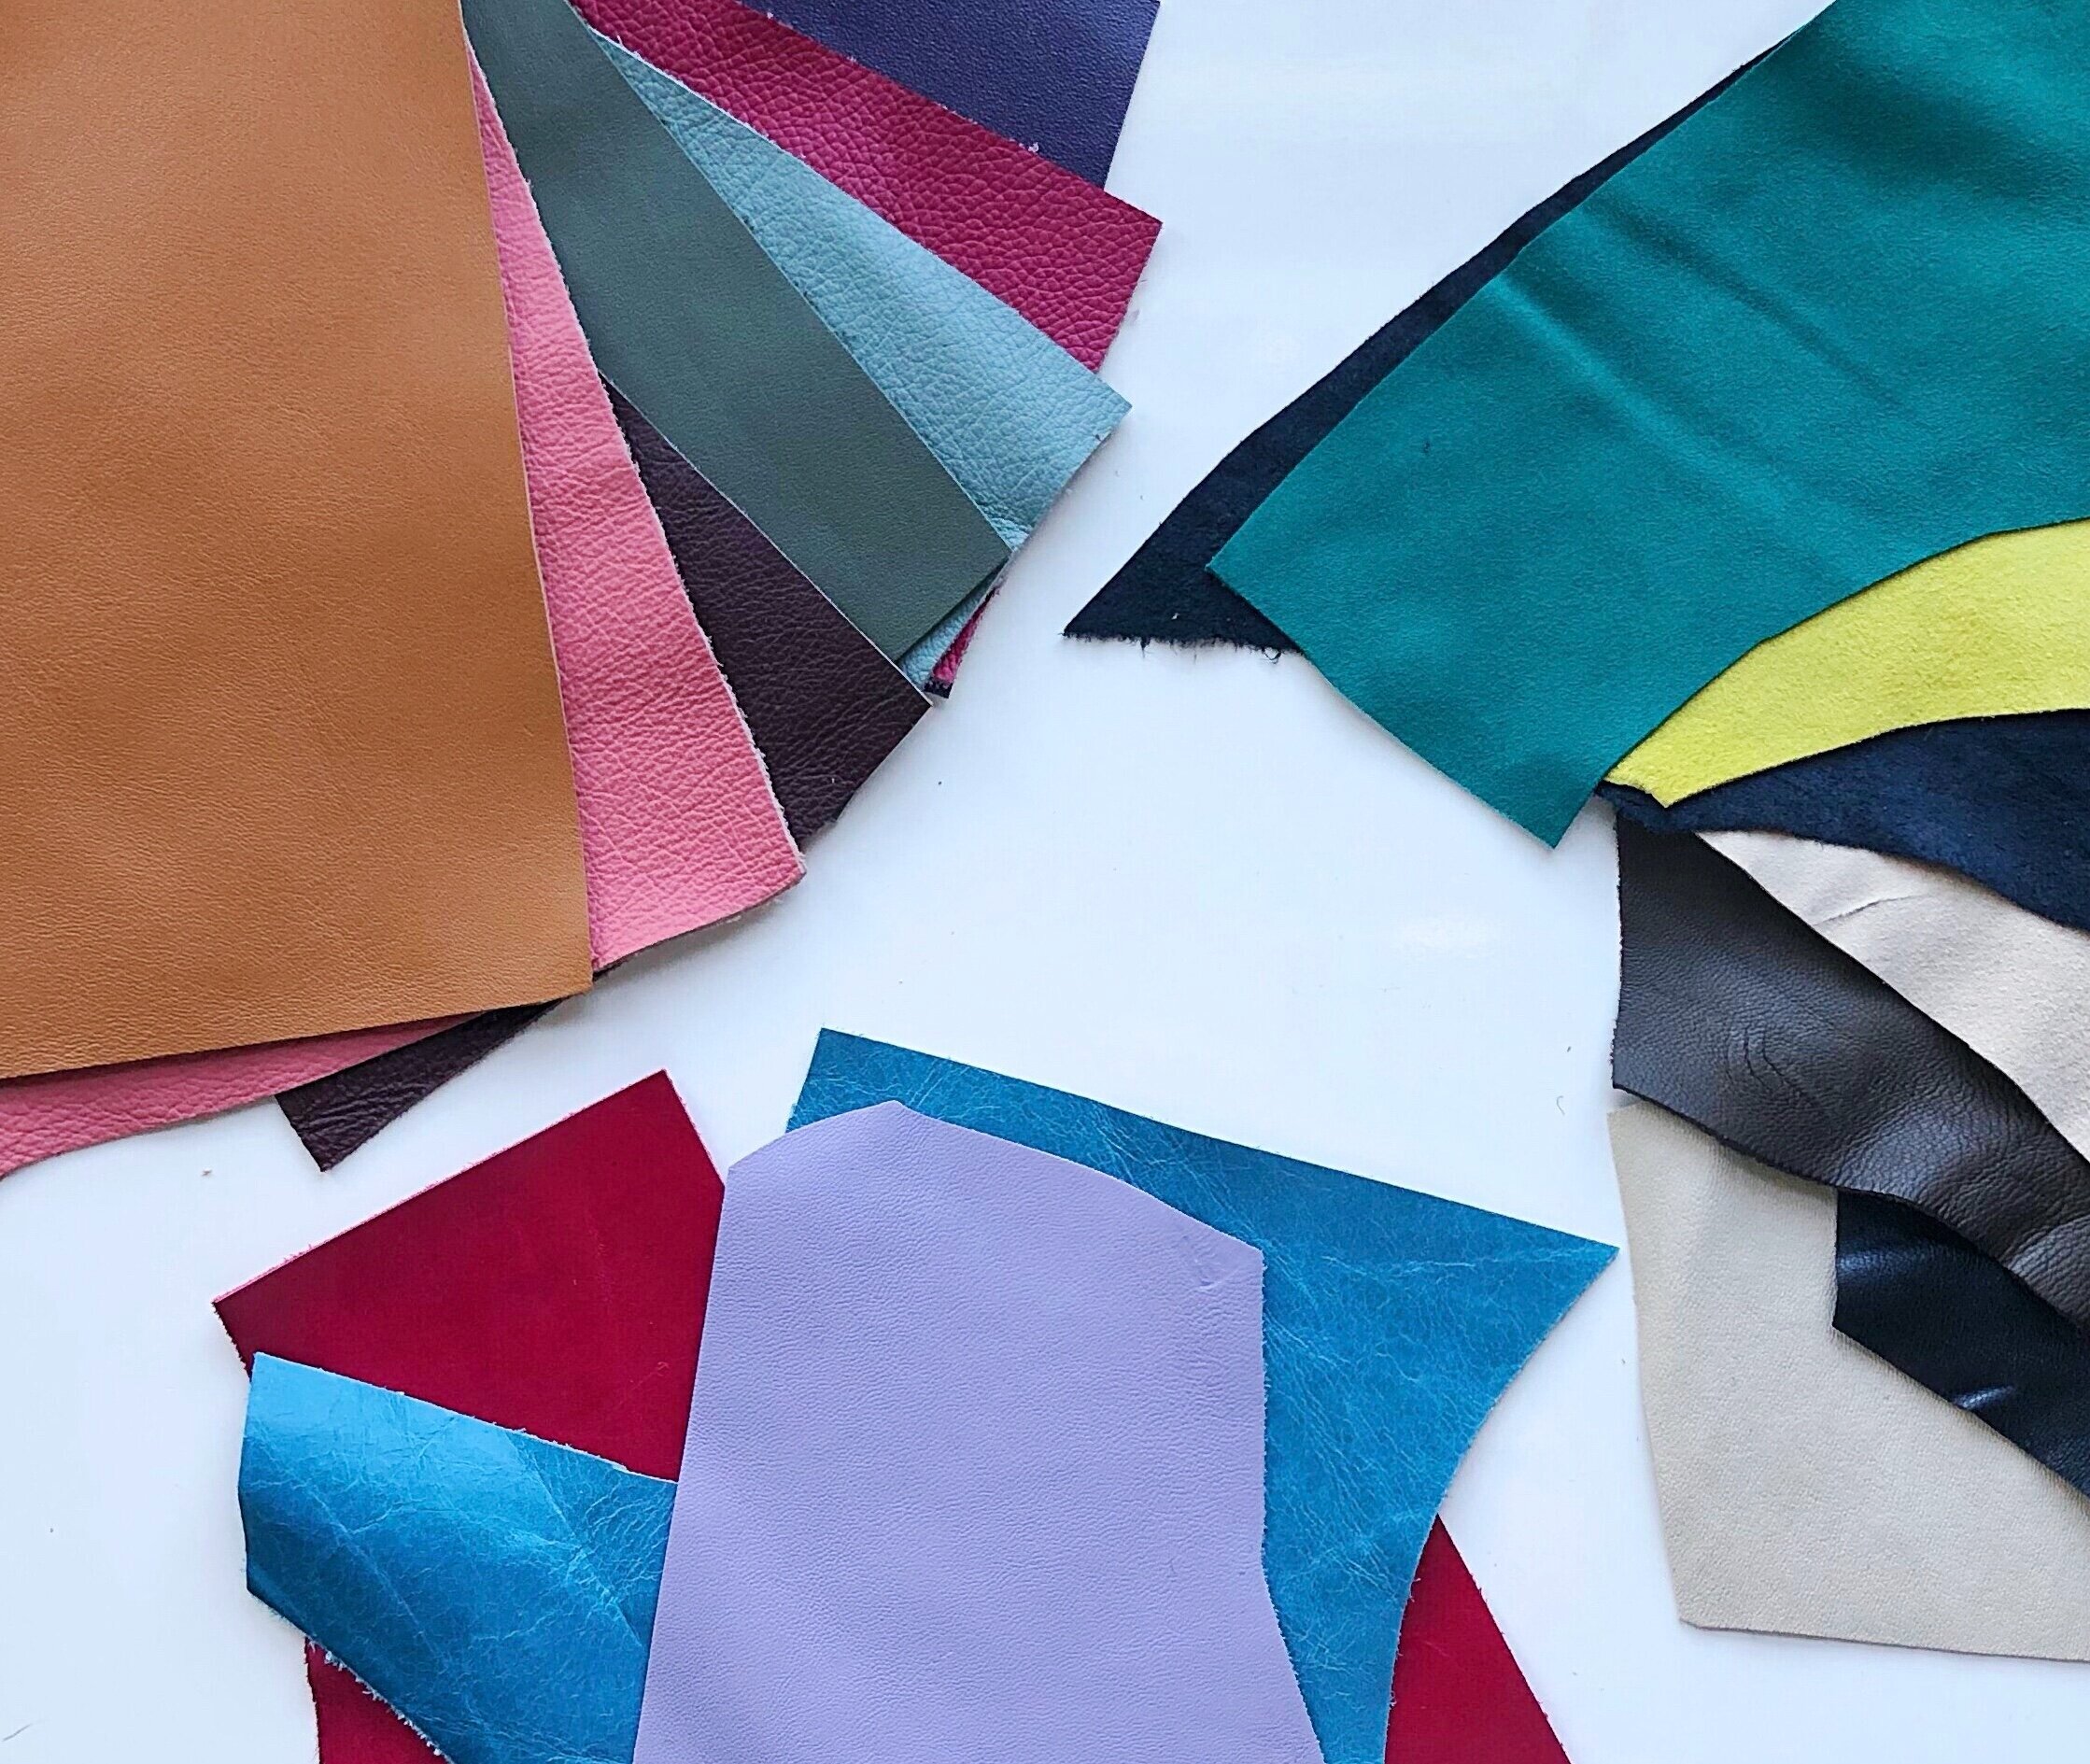 Boho Knot Bag Felted Purse by Cynthia Pilon Designs - Yarn Loop